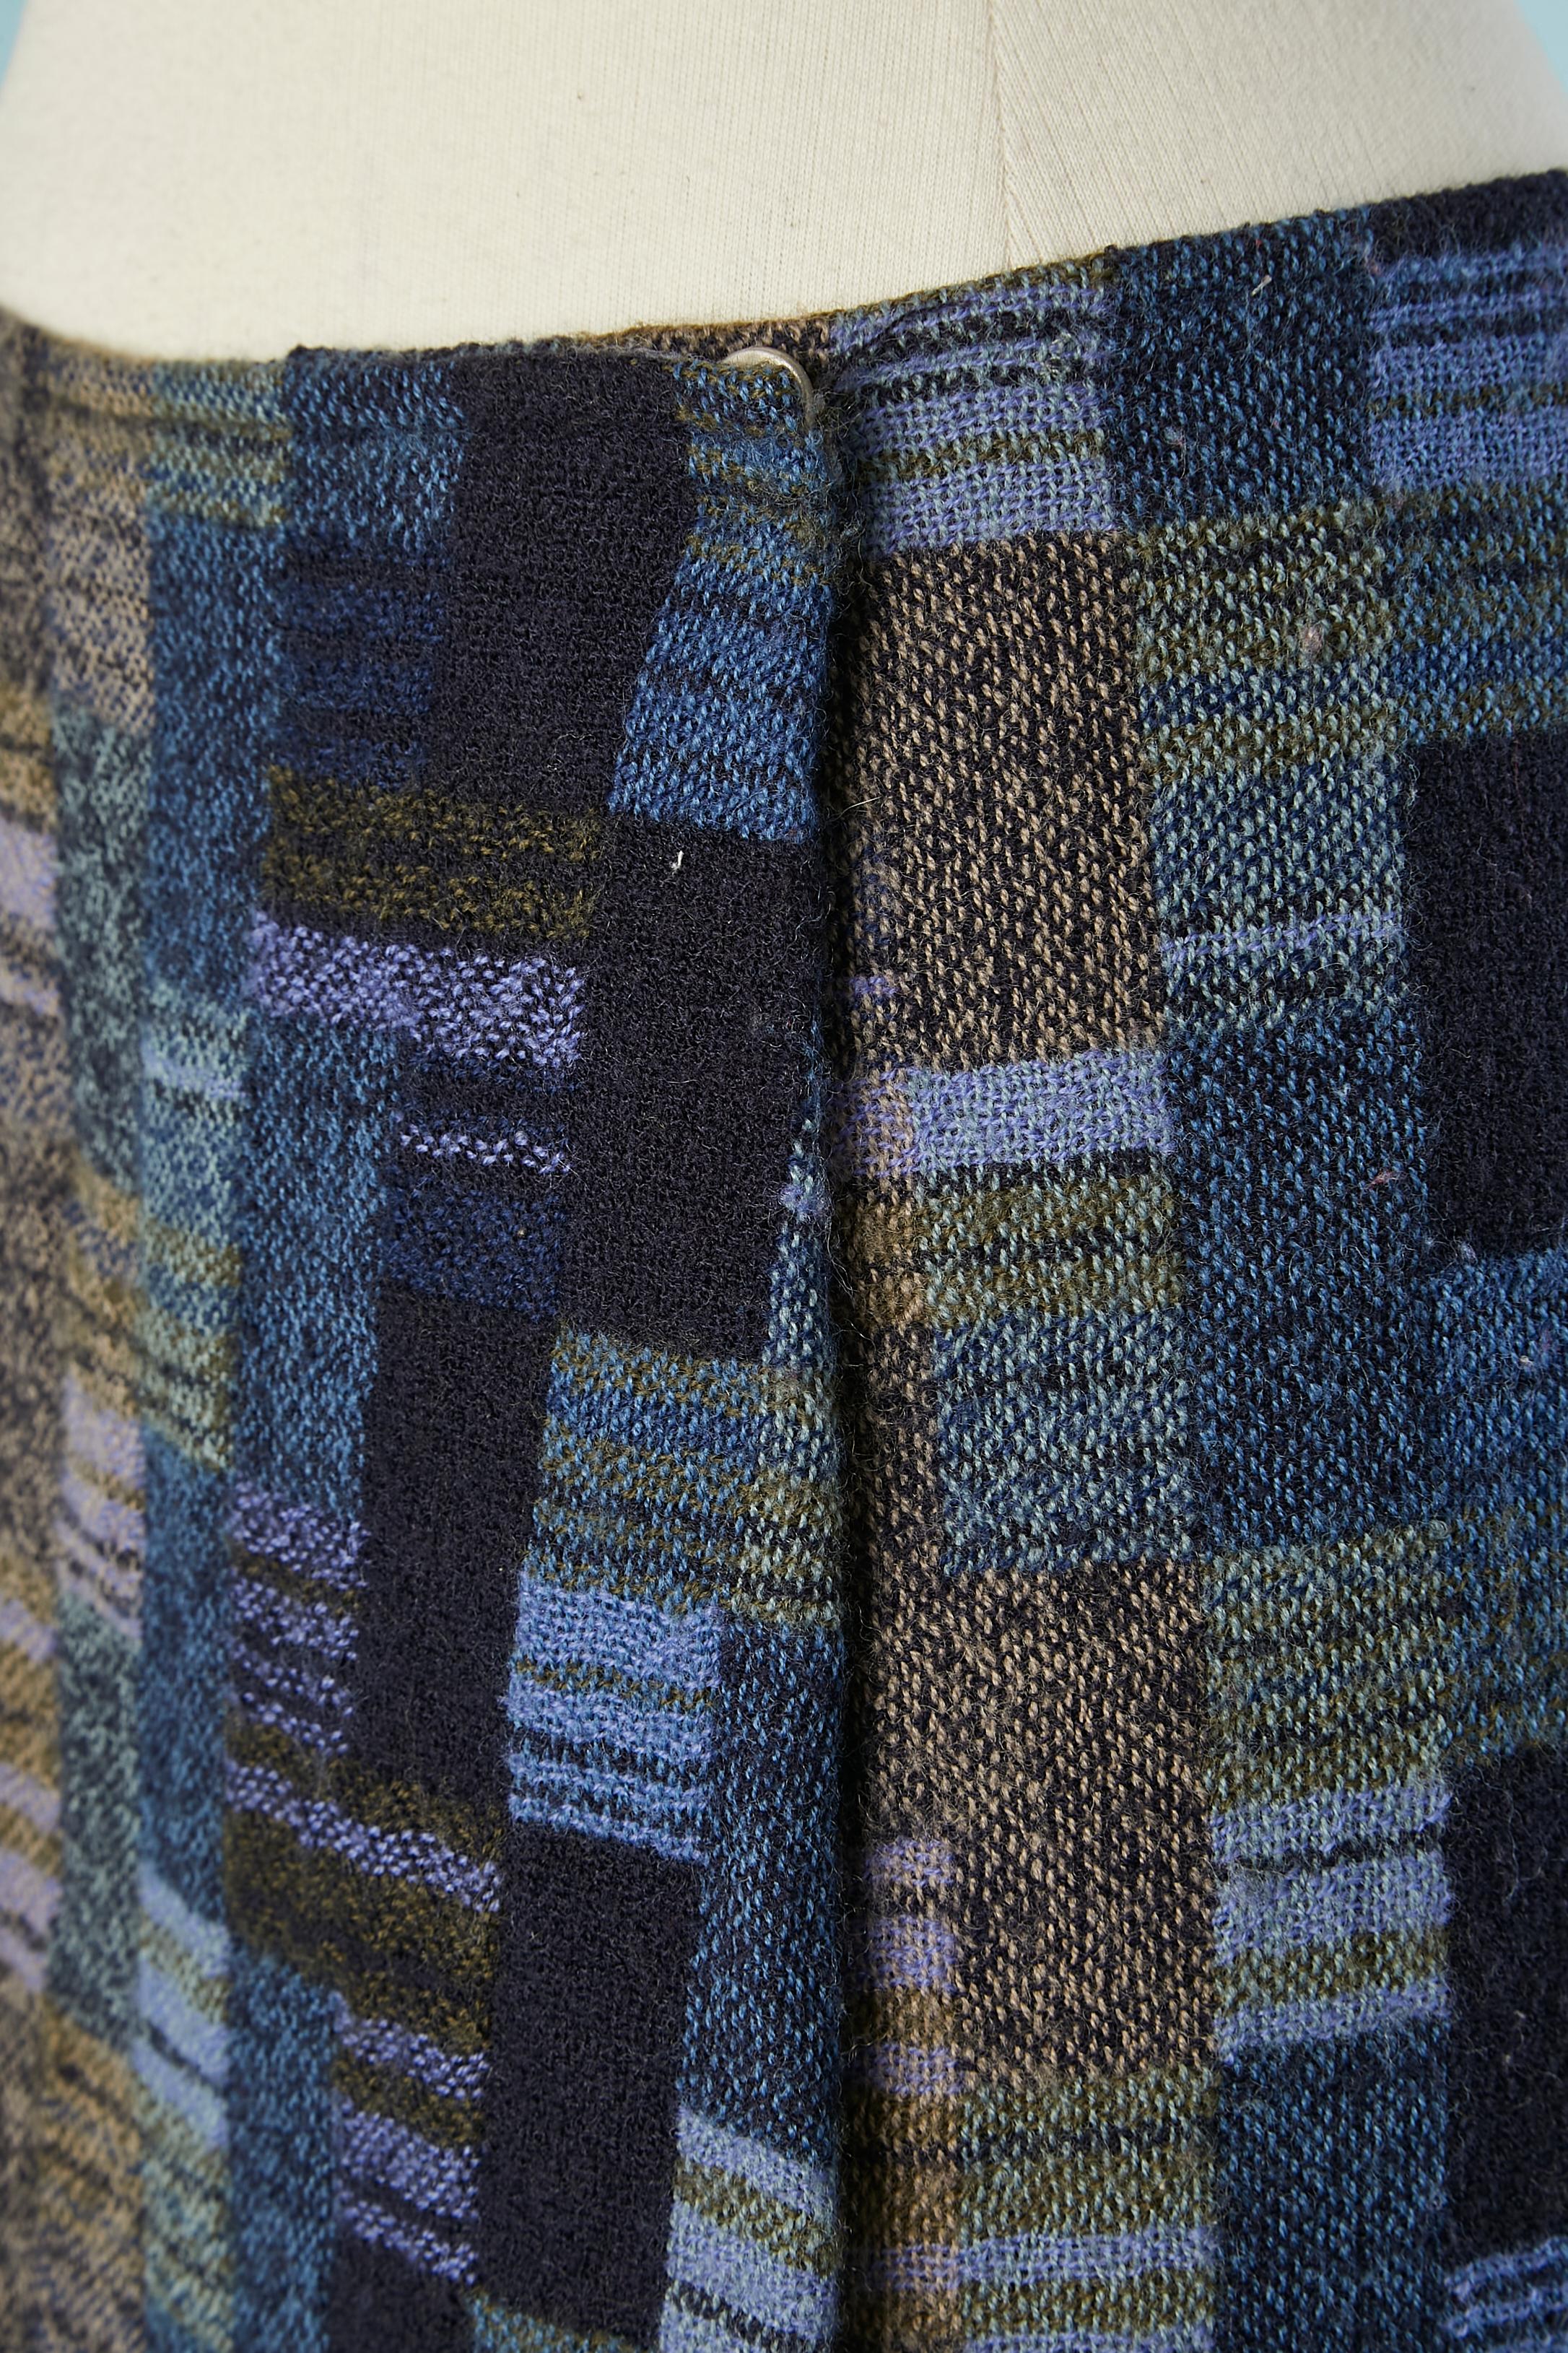 Mini-Wickelrock aus Tweed in verschiedenen Farben . Hauptstoff: 93% Wolle, 7% Polyamid. 
Futter: Acetat & Viskose (bedruckt) 
Versteckte Markenknöpfe in der vorderen Mitte der Taille. 
SIZE 36 (Fr) M 